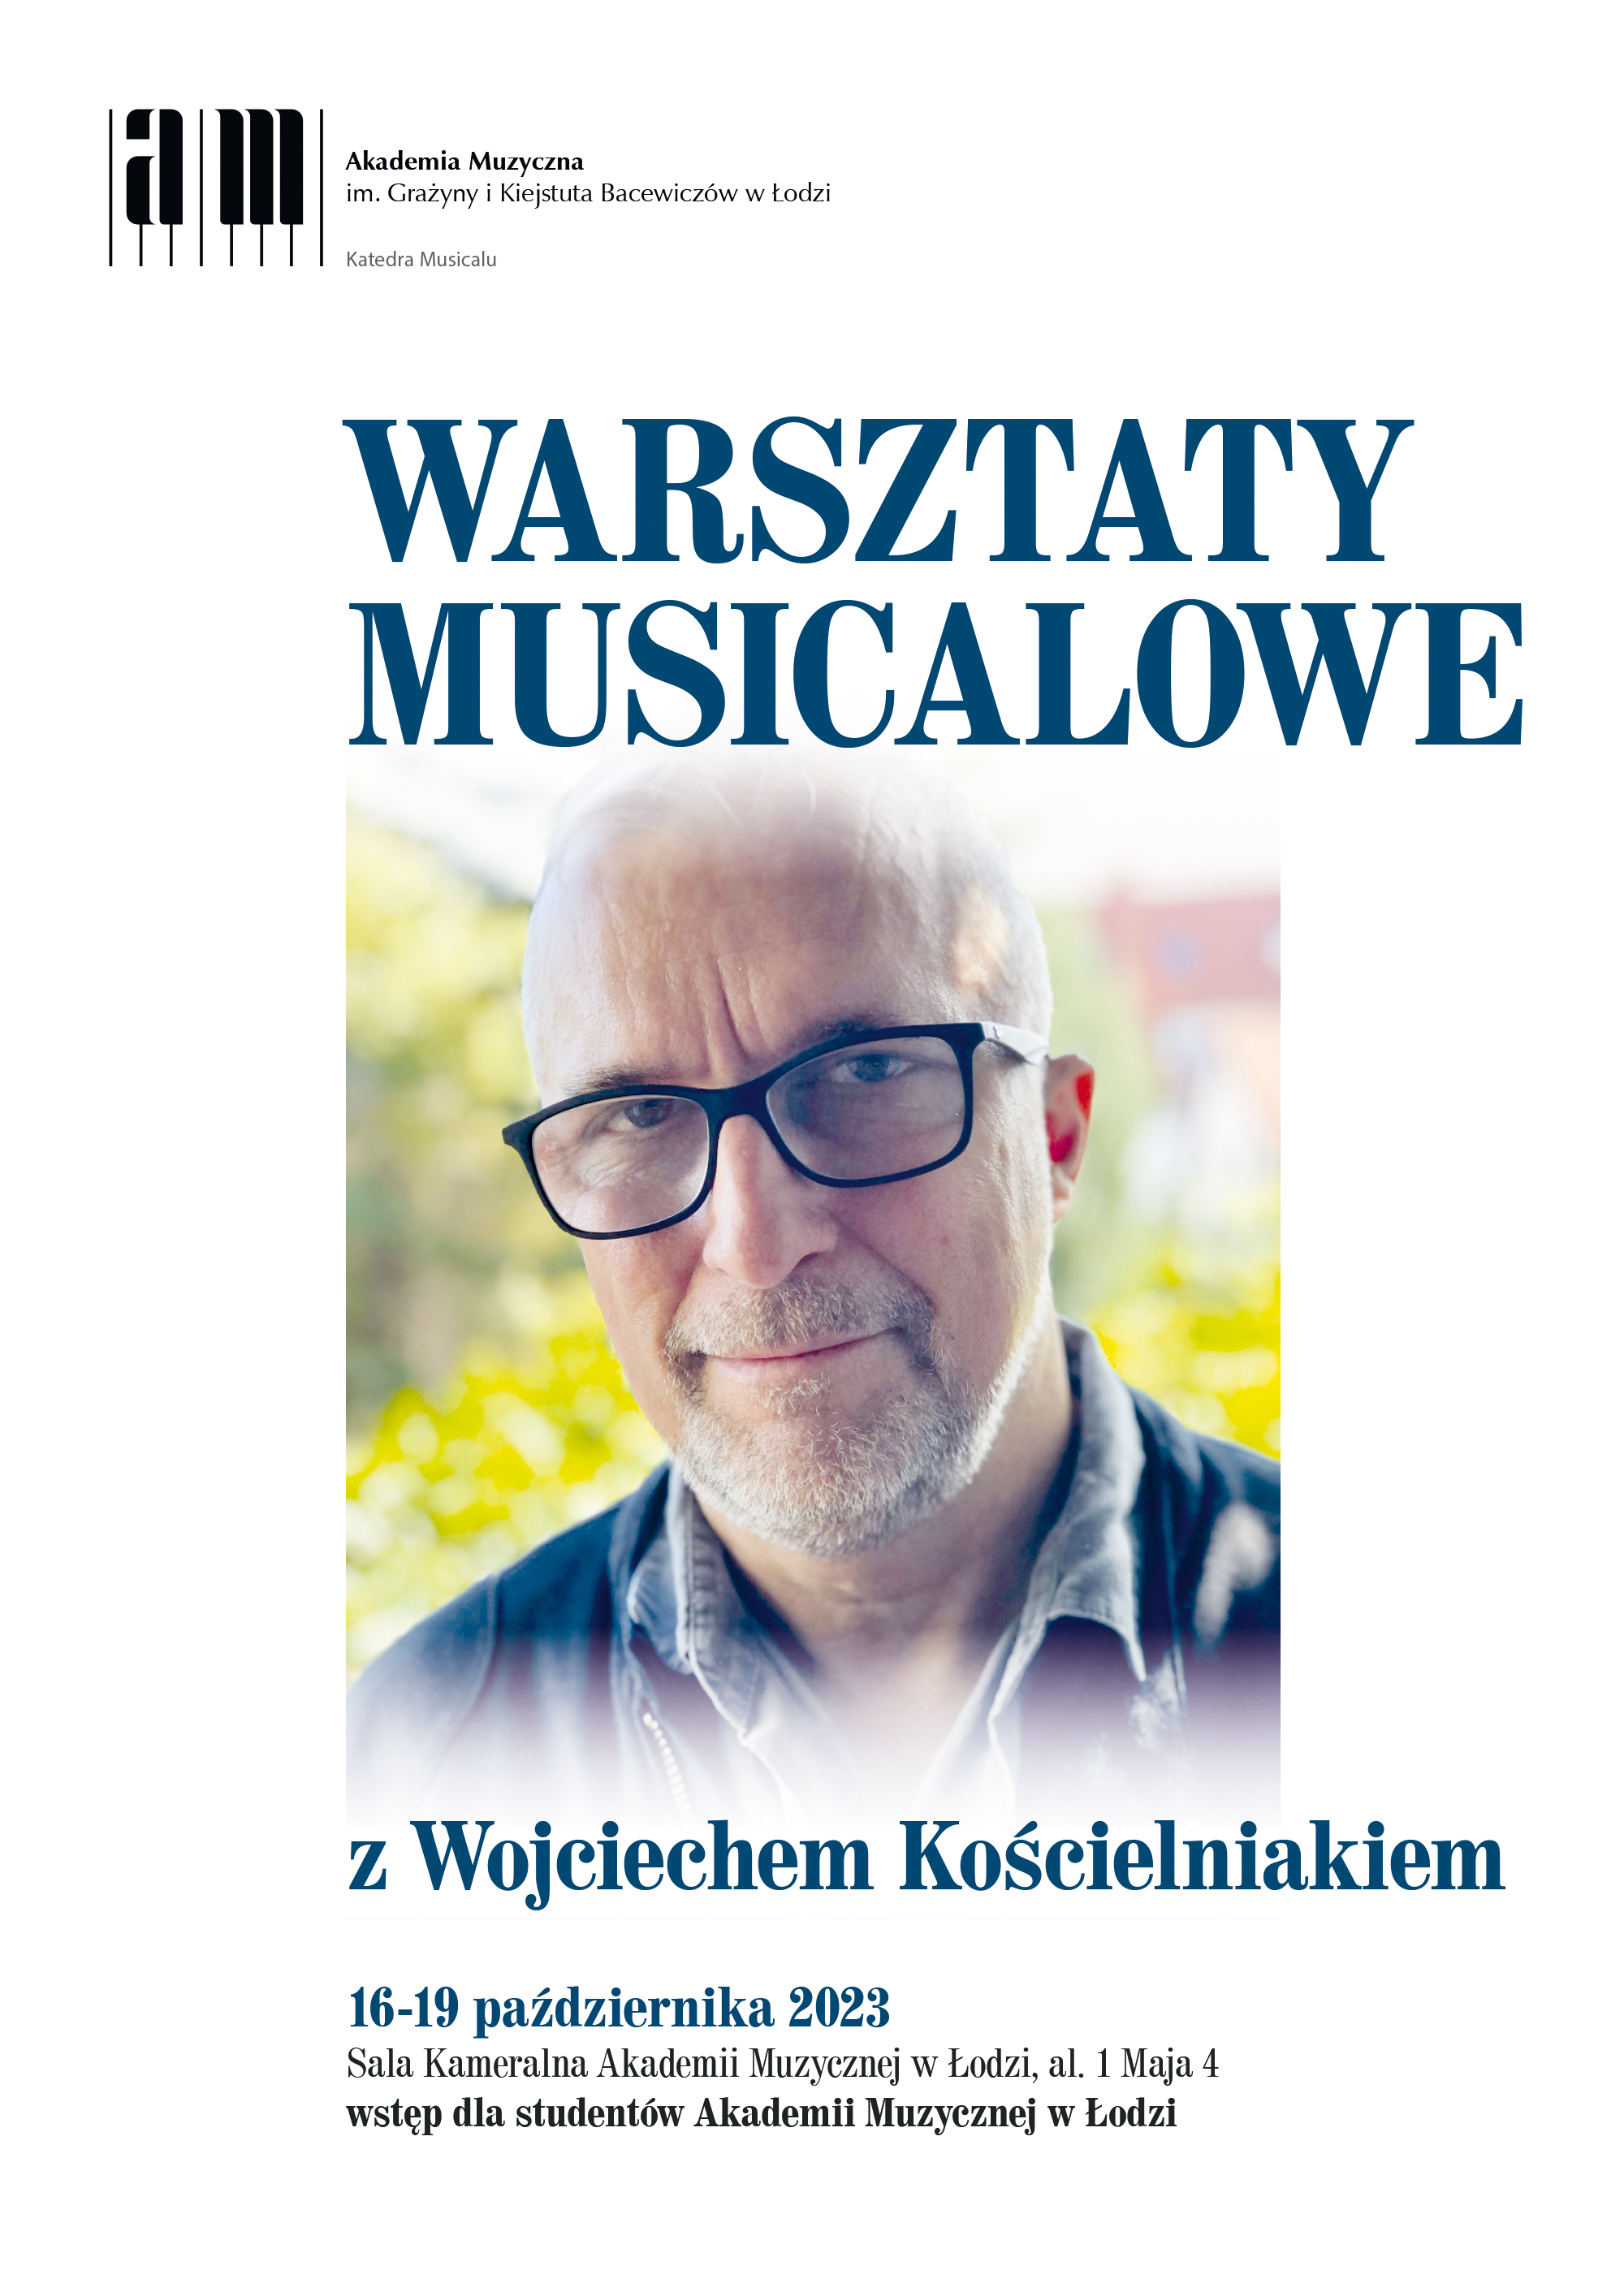 Warsztaty musicalowe z Wojciechem Kościelniakiem